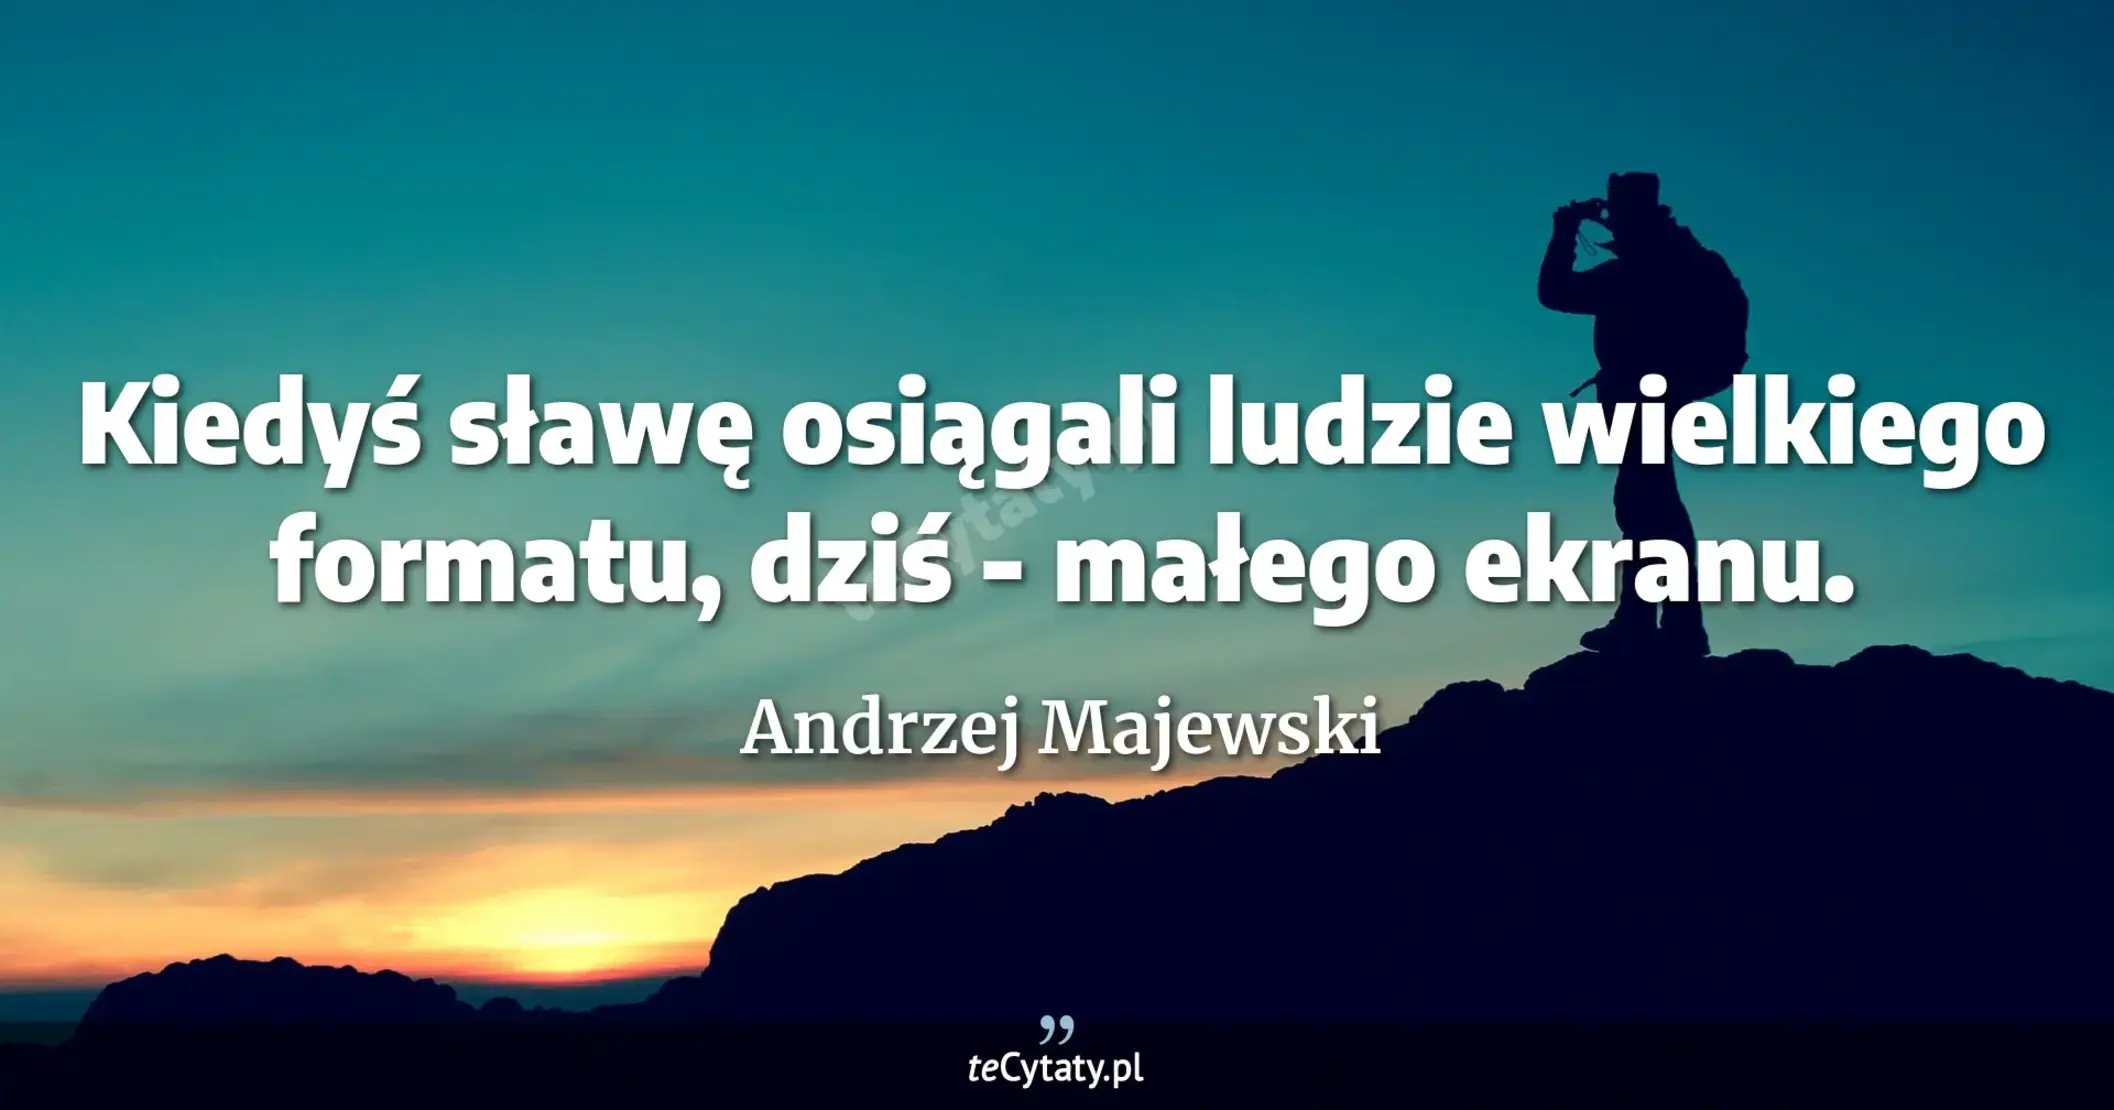 Kiedyś sławę osiągali ludzie wielkiego formatu, dziś - małego ekranu. - Andrzej Majewski